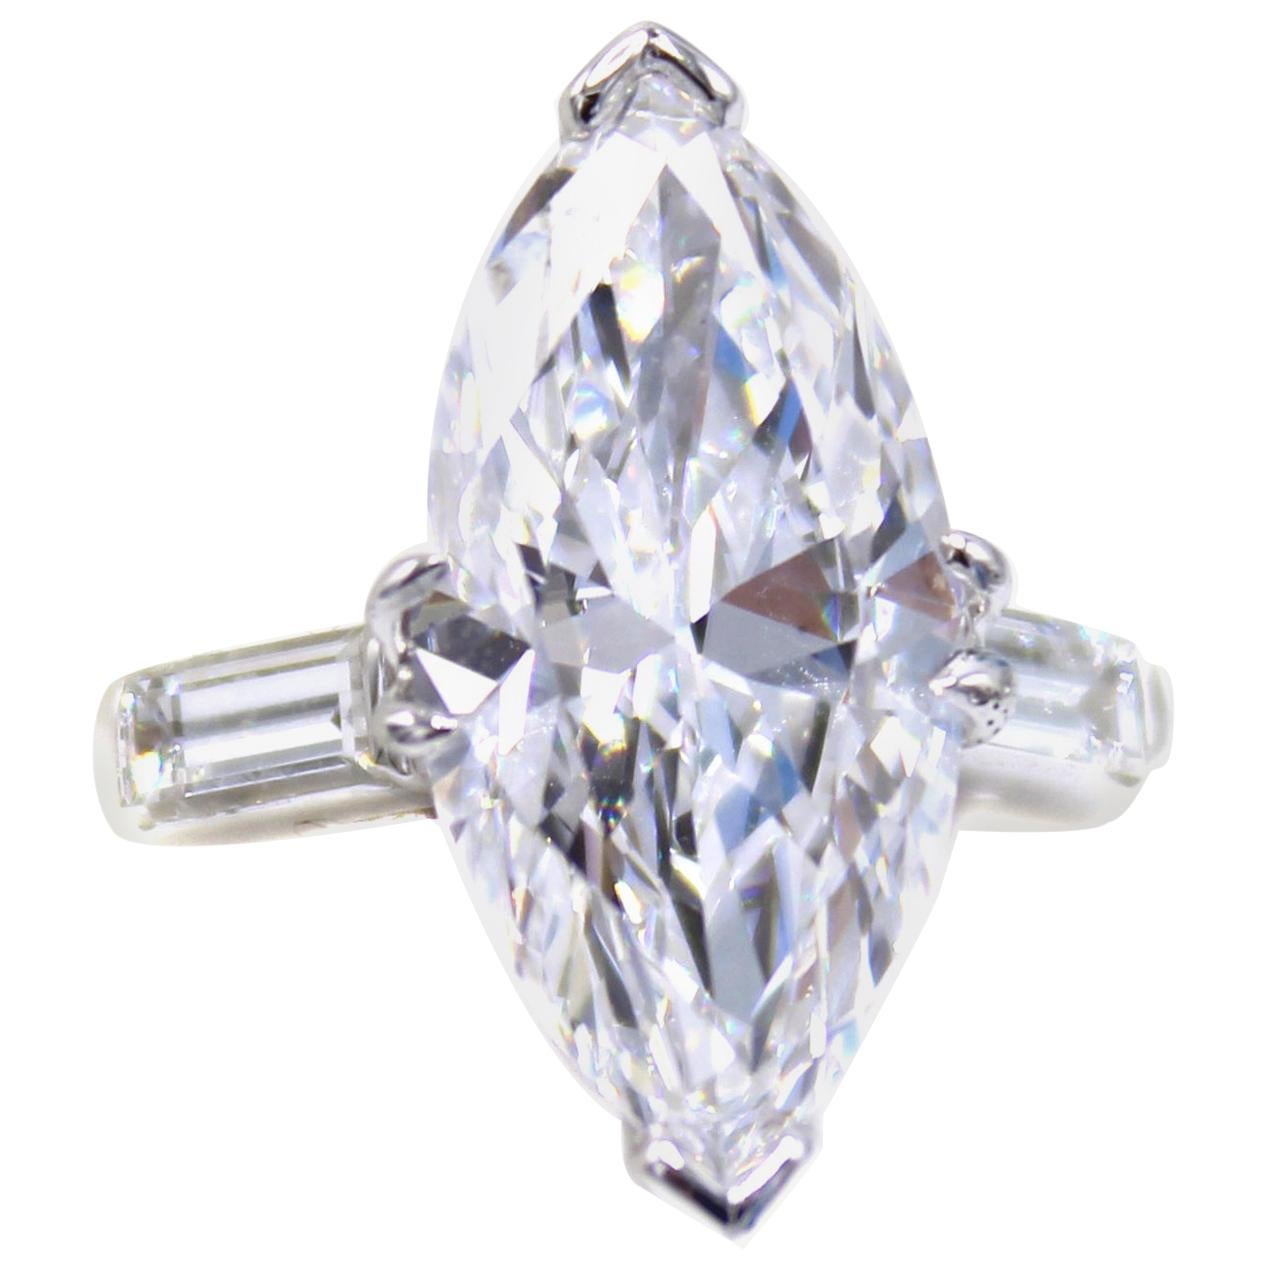 Is a D clarity diamond good?